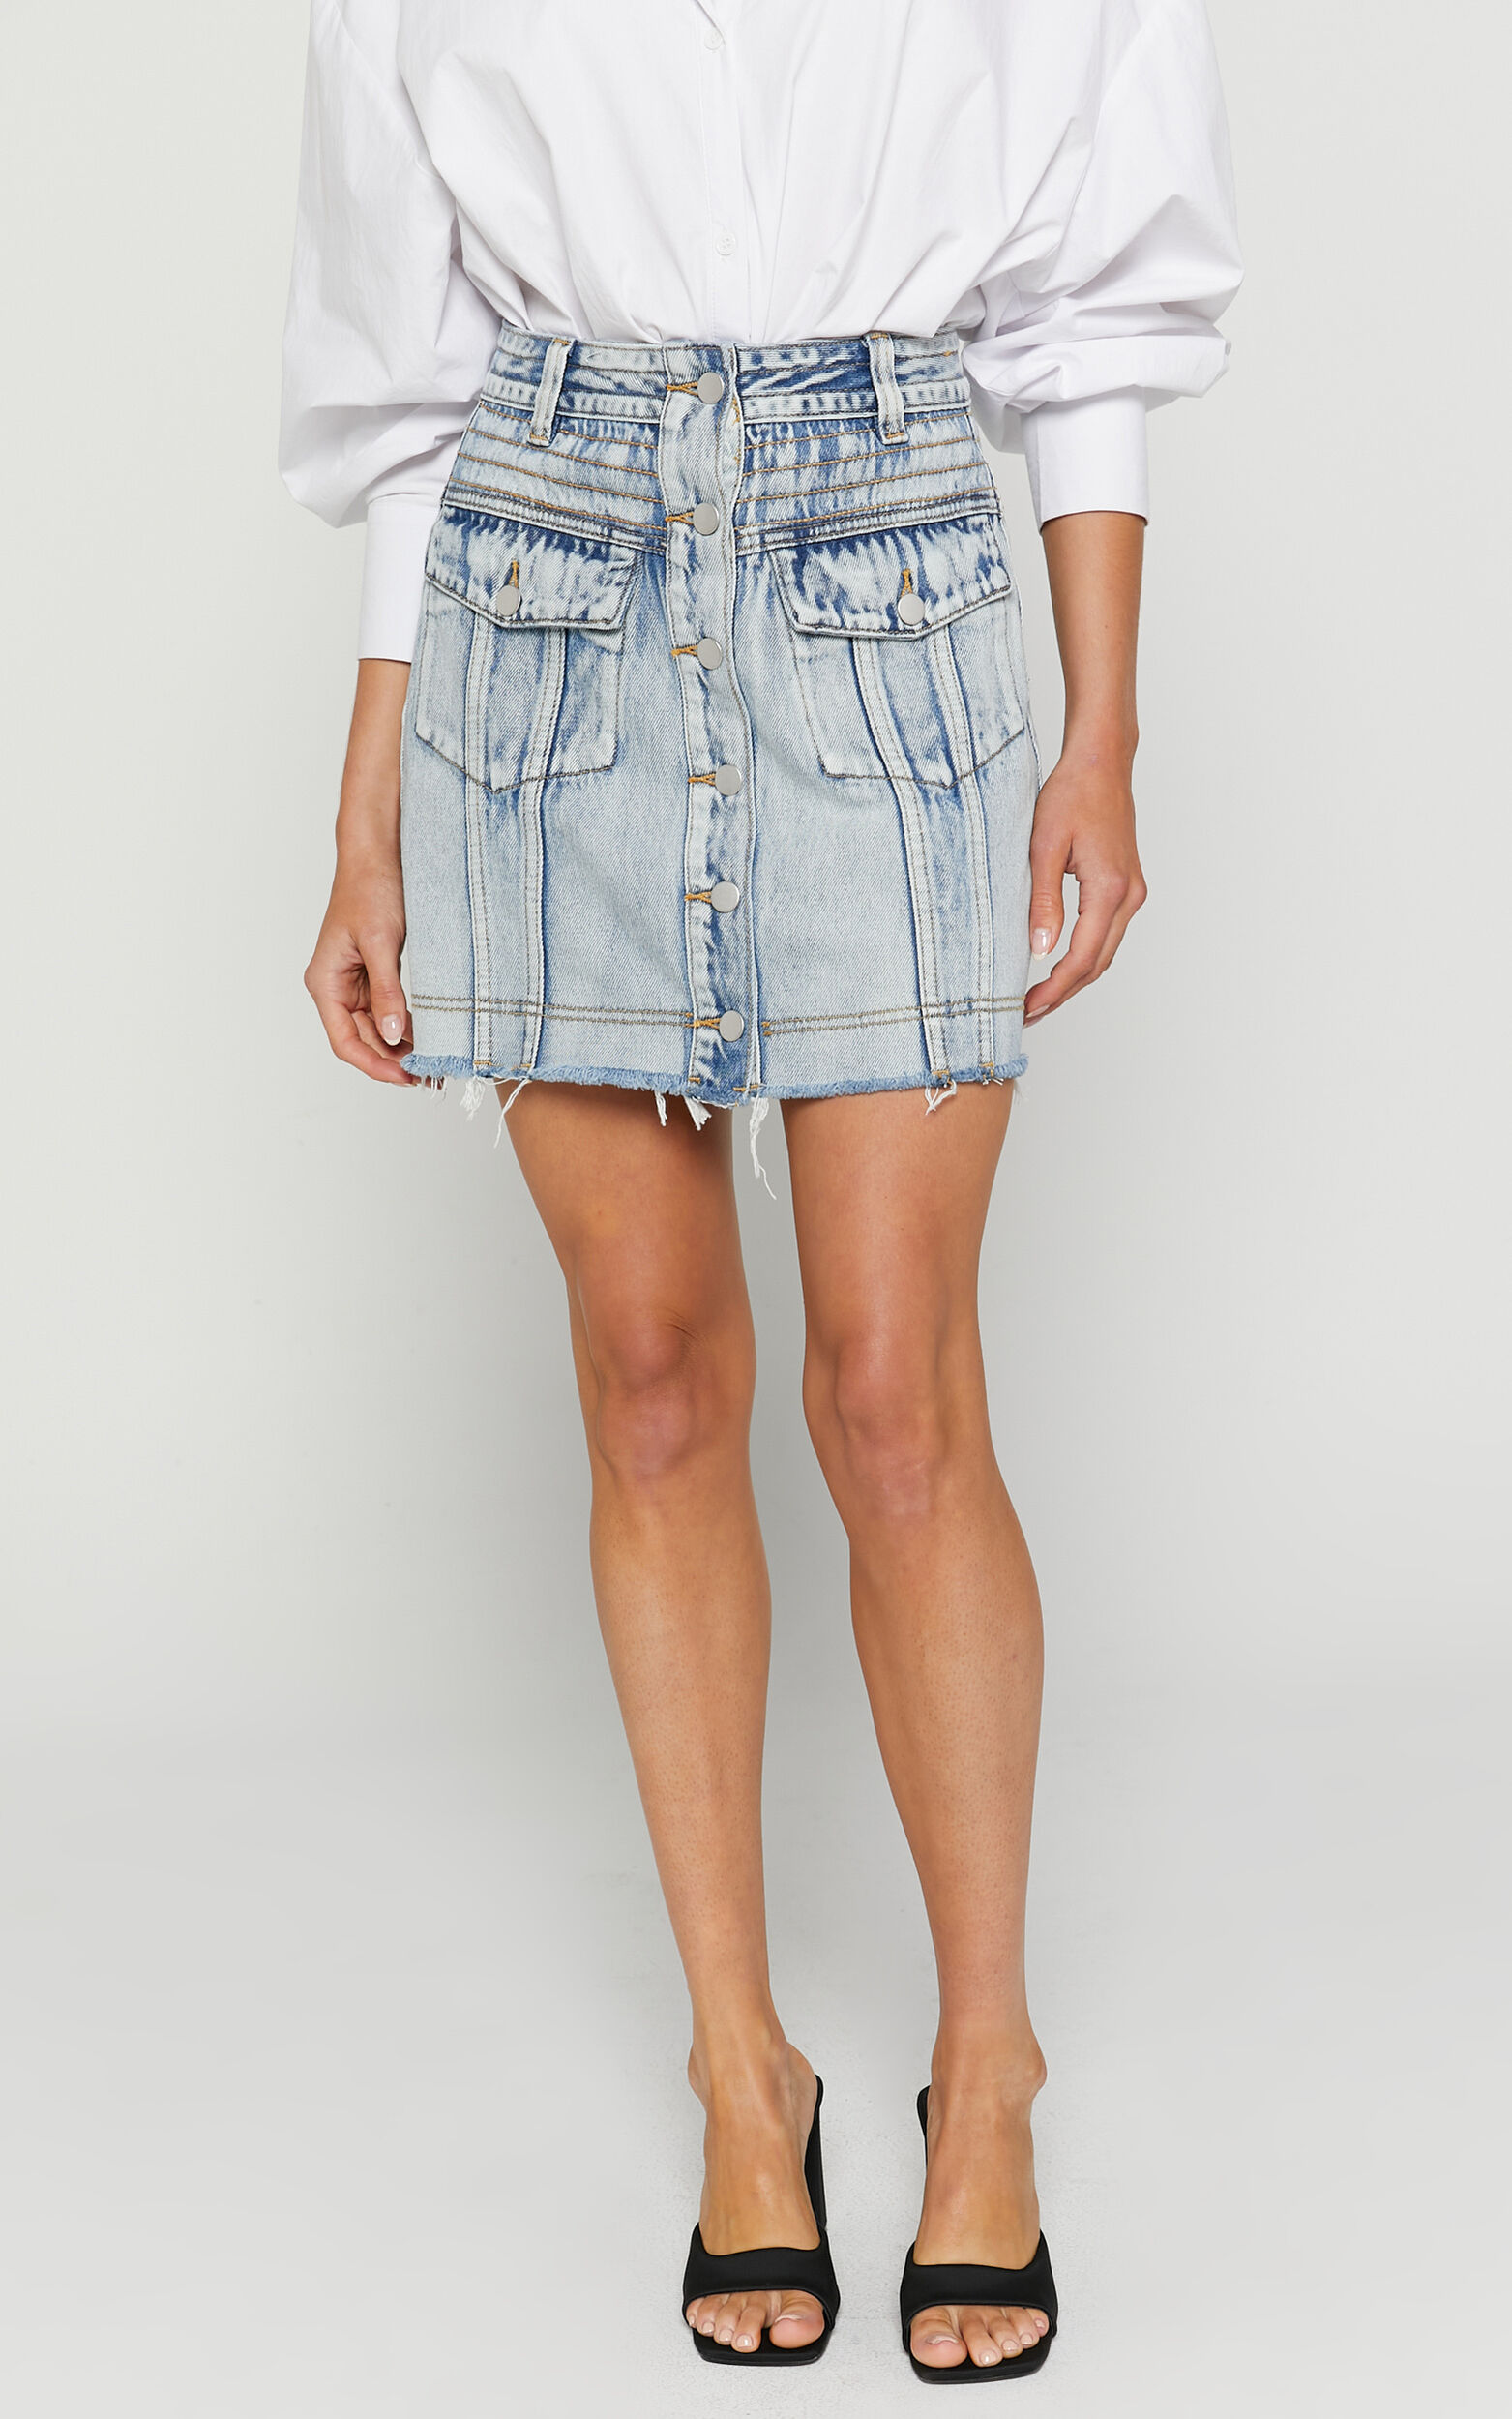 DIY Pearl Denim Skirt  Embellished Jeans – Igho & Me